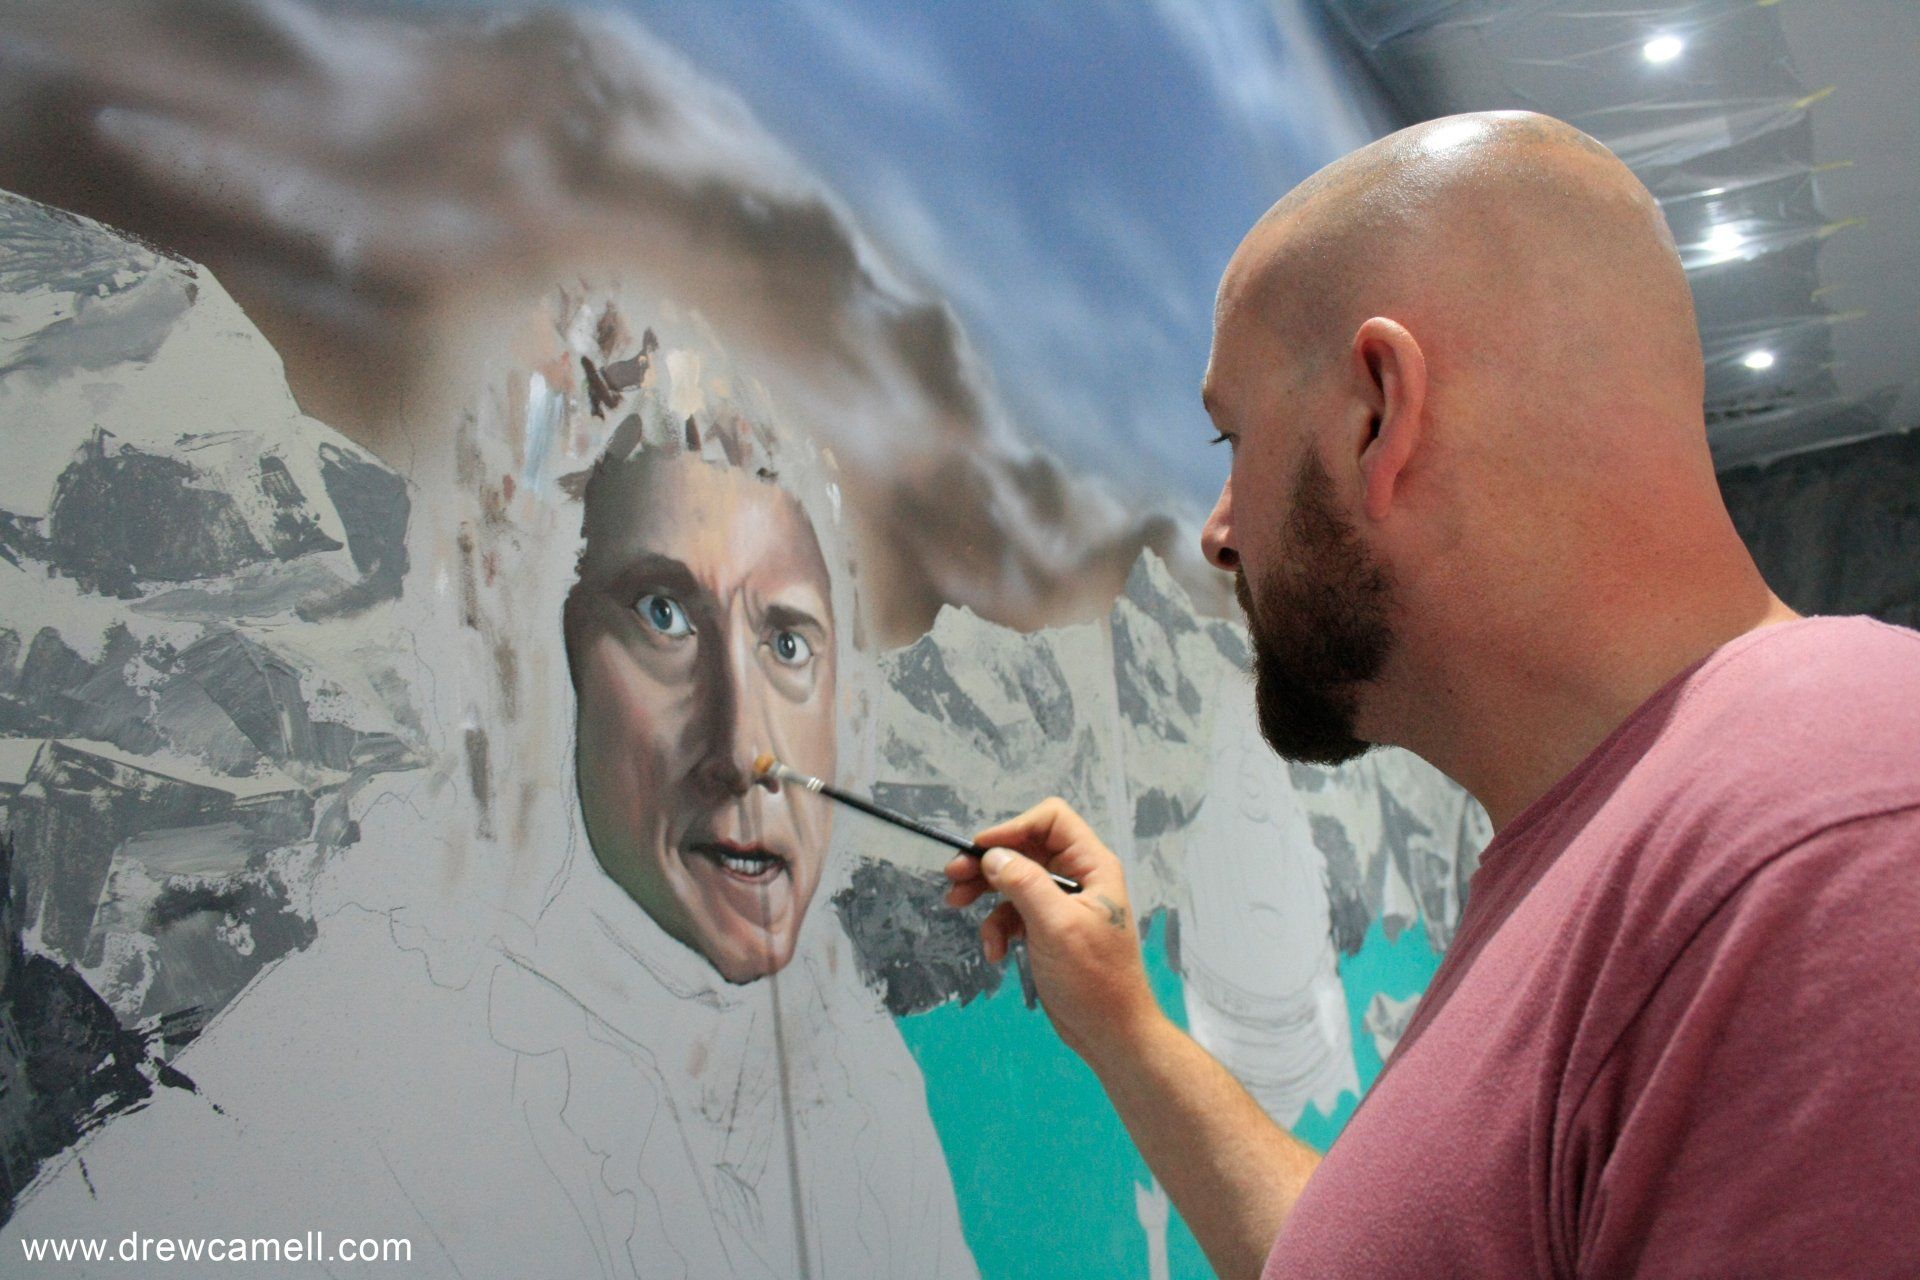 Künstler Drew Camell malt an einem Wand Portrait eines großen Aufragsgemaeldes